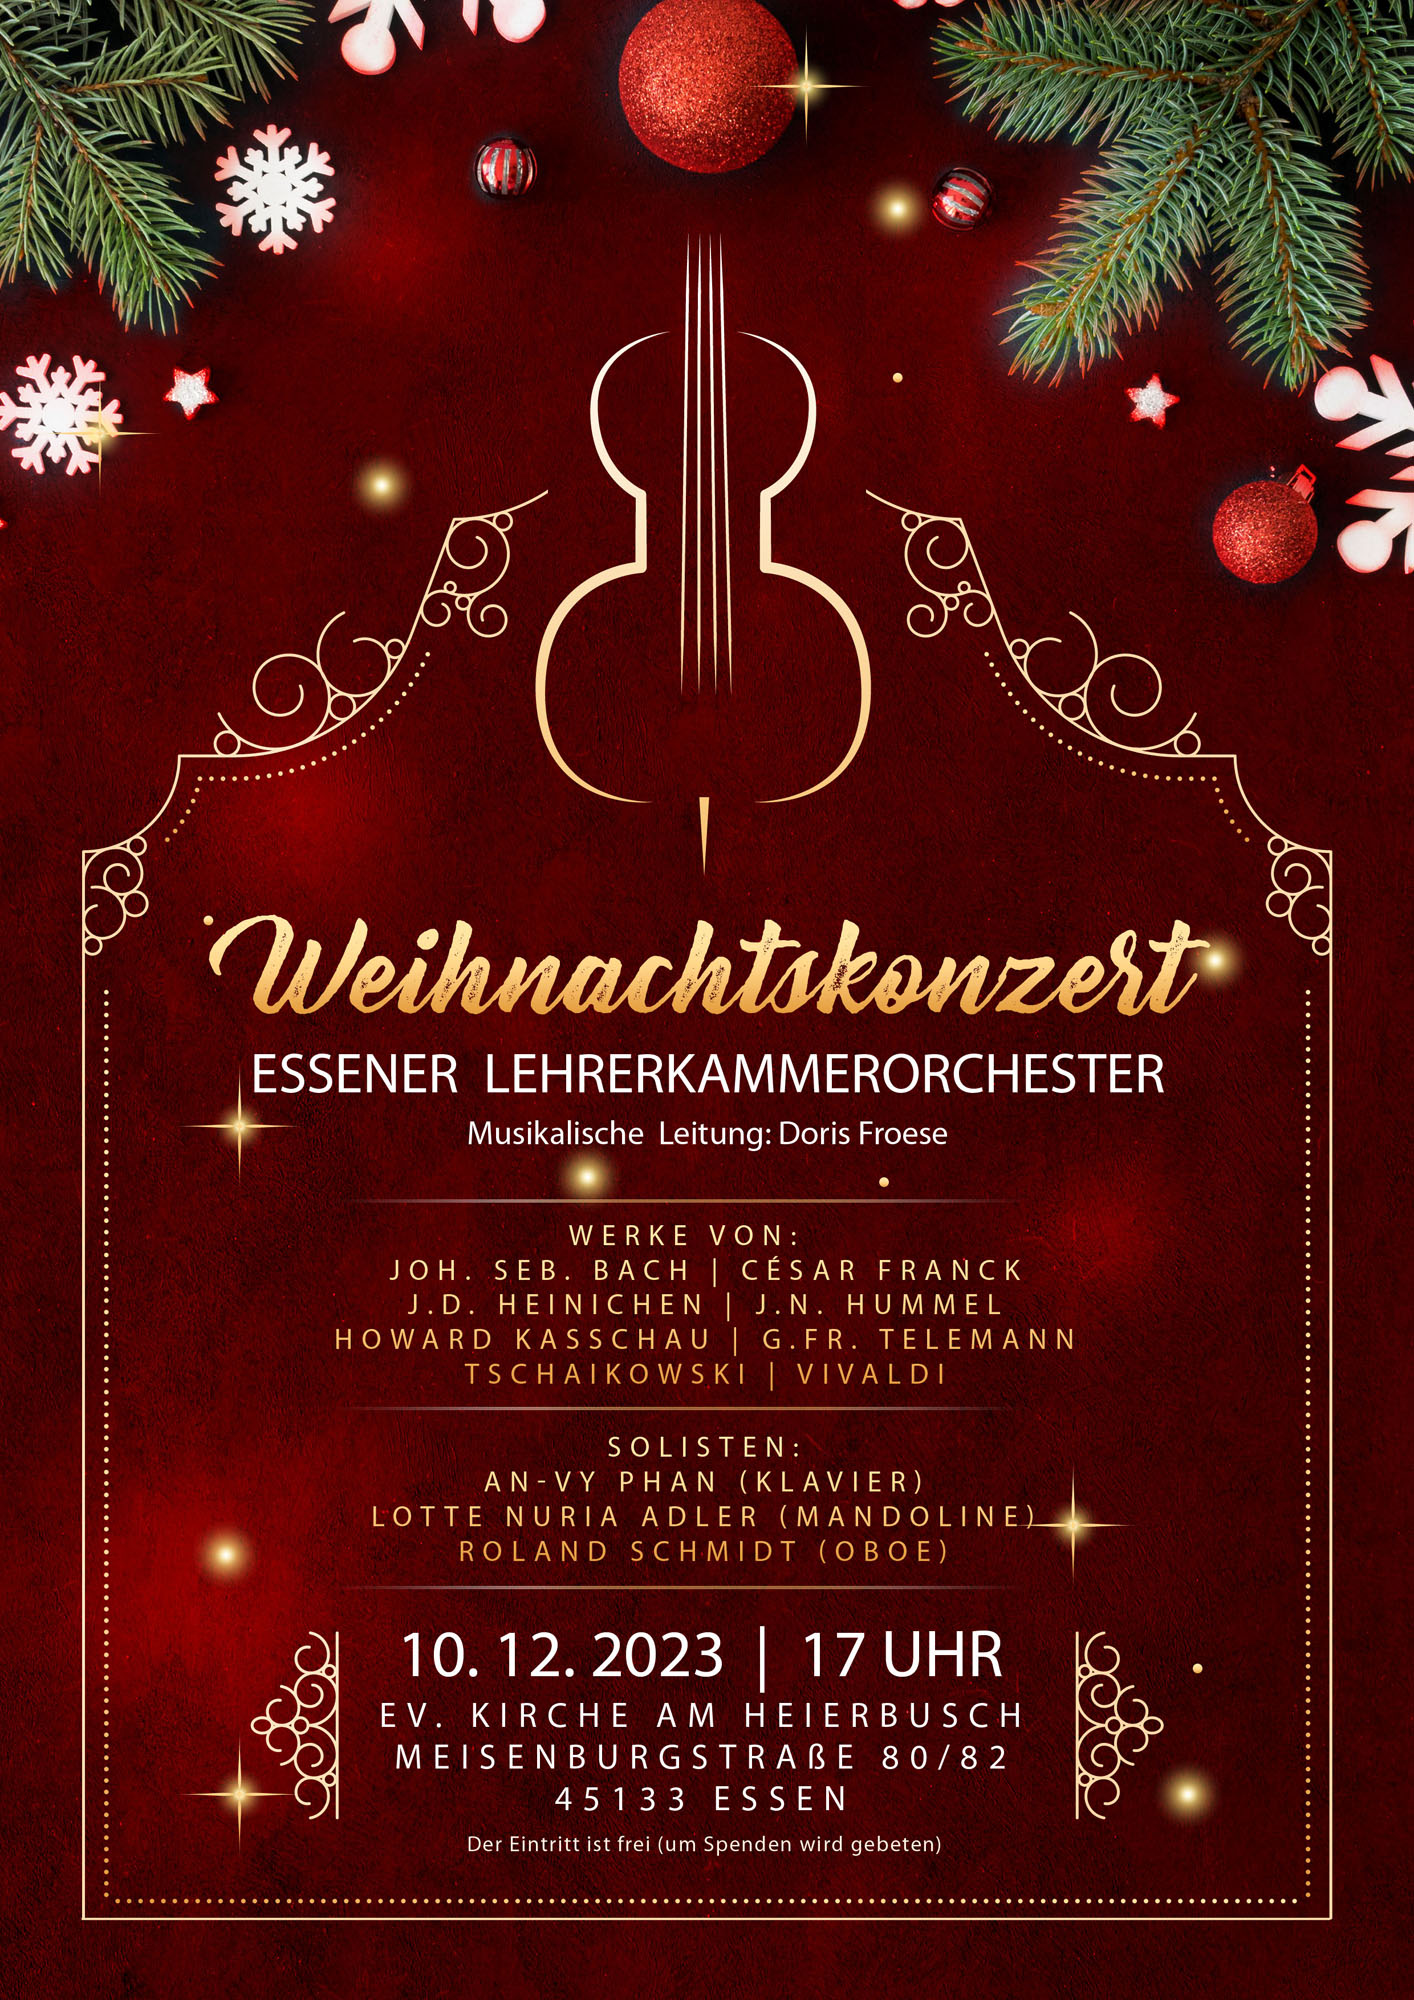 Weihnachtskonzert 10.12.2023 Essener Lehrerkammerorchester